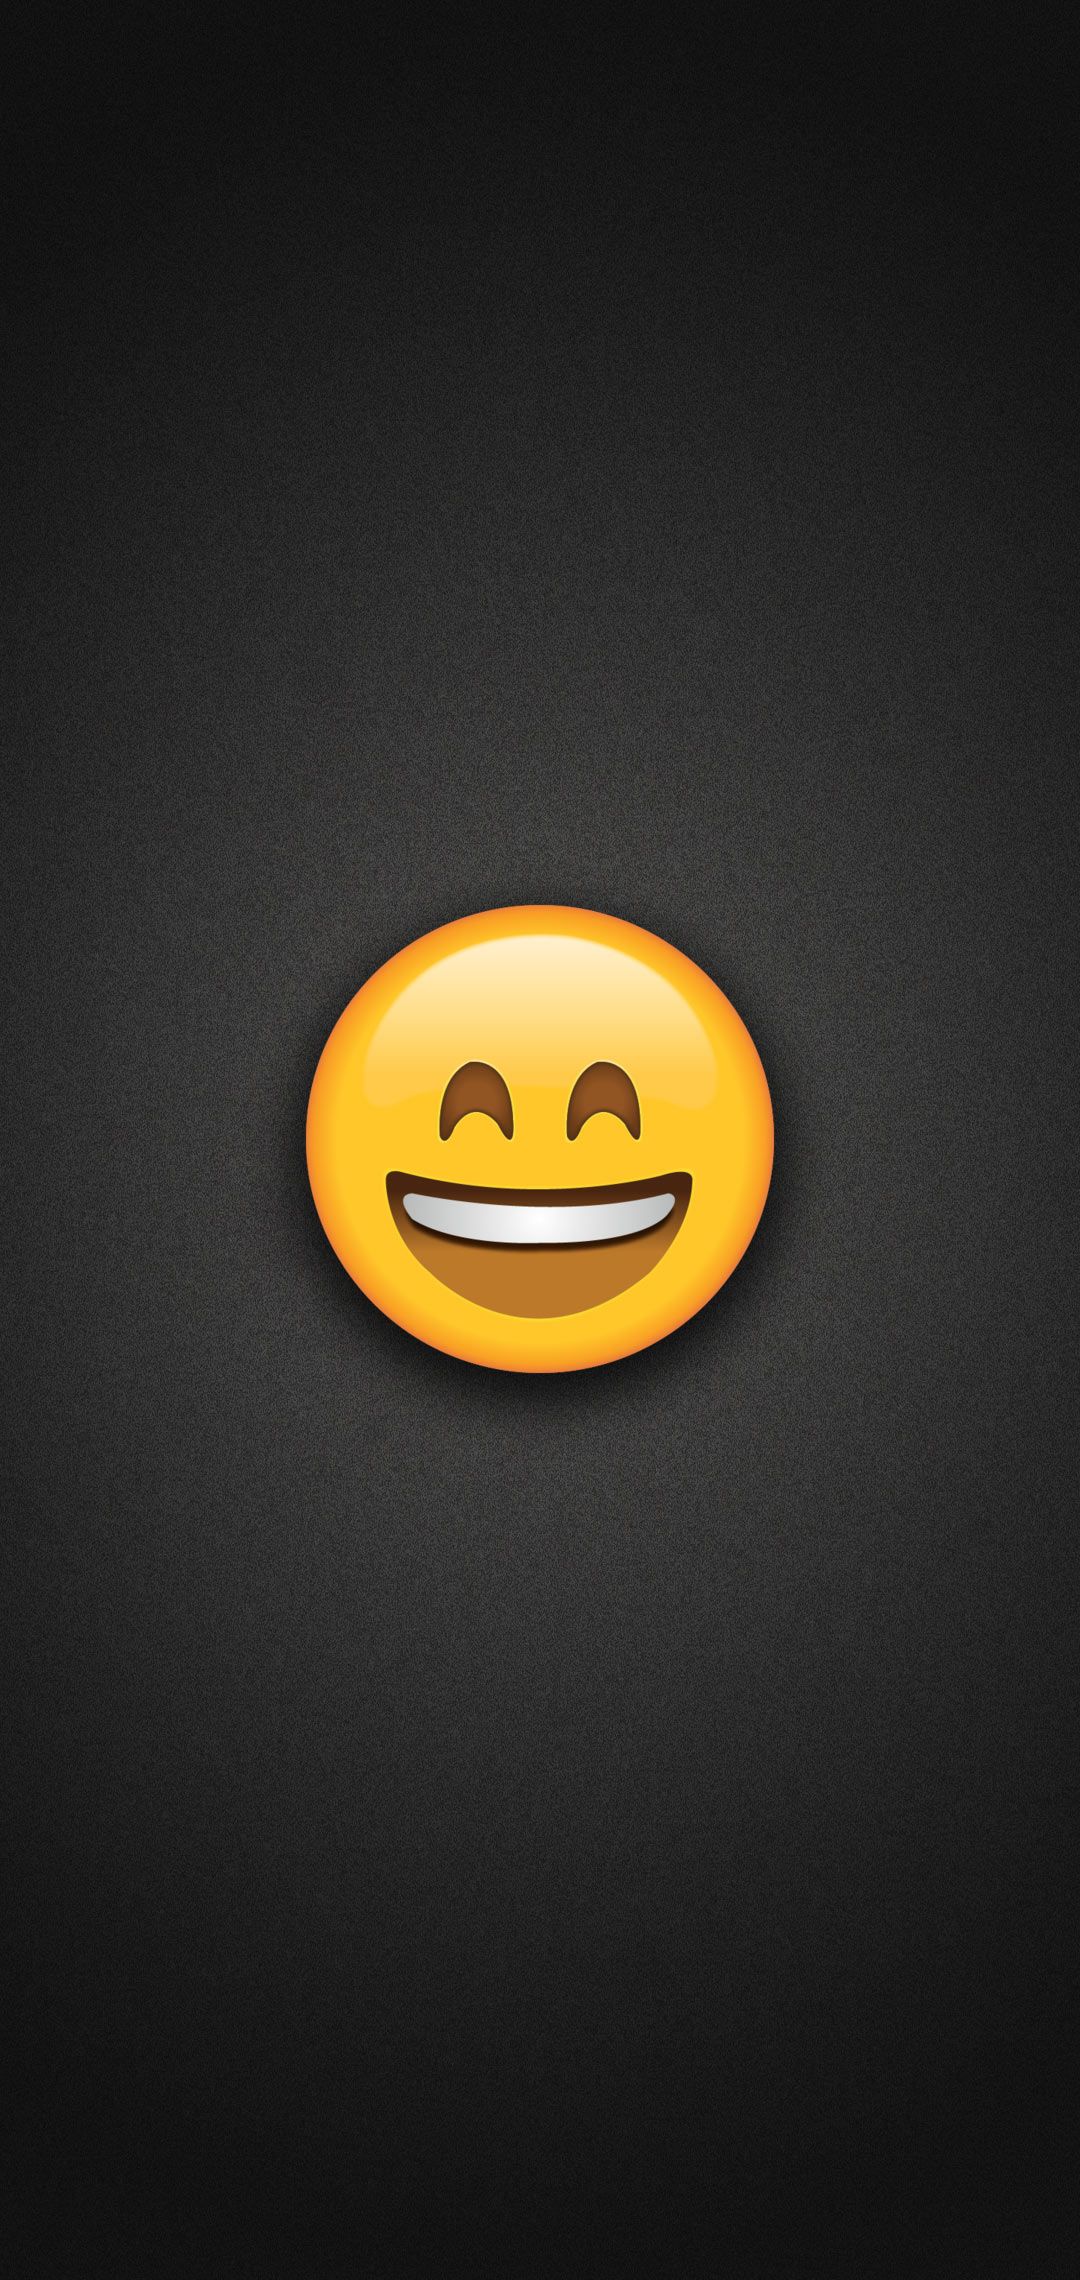 Smiling Emoji with Smiling Eyes Phone Wallpaper